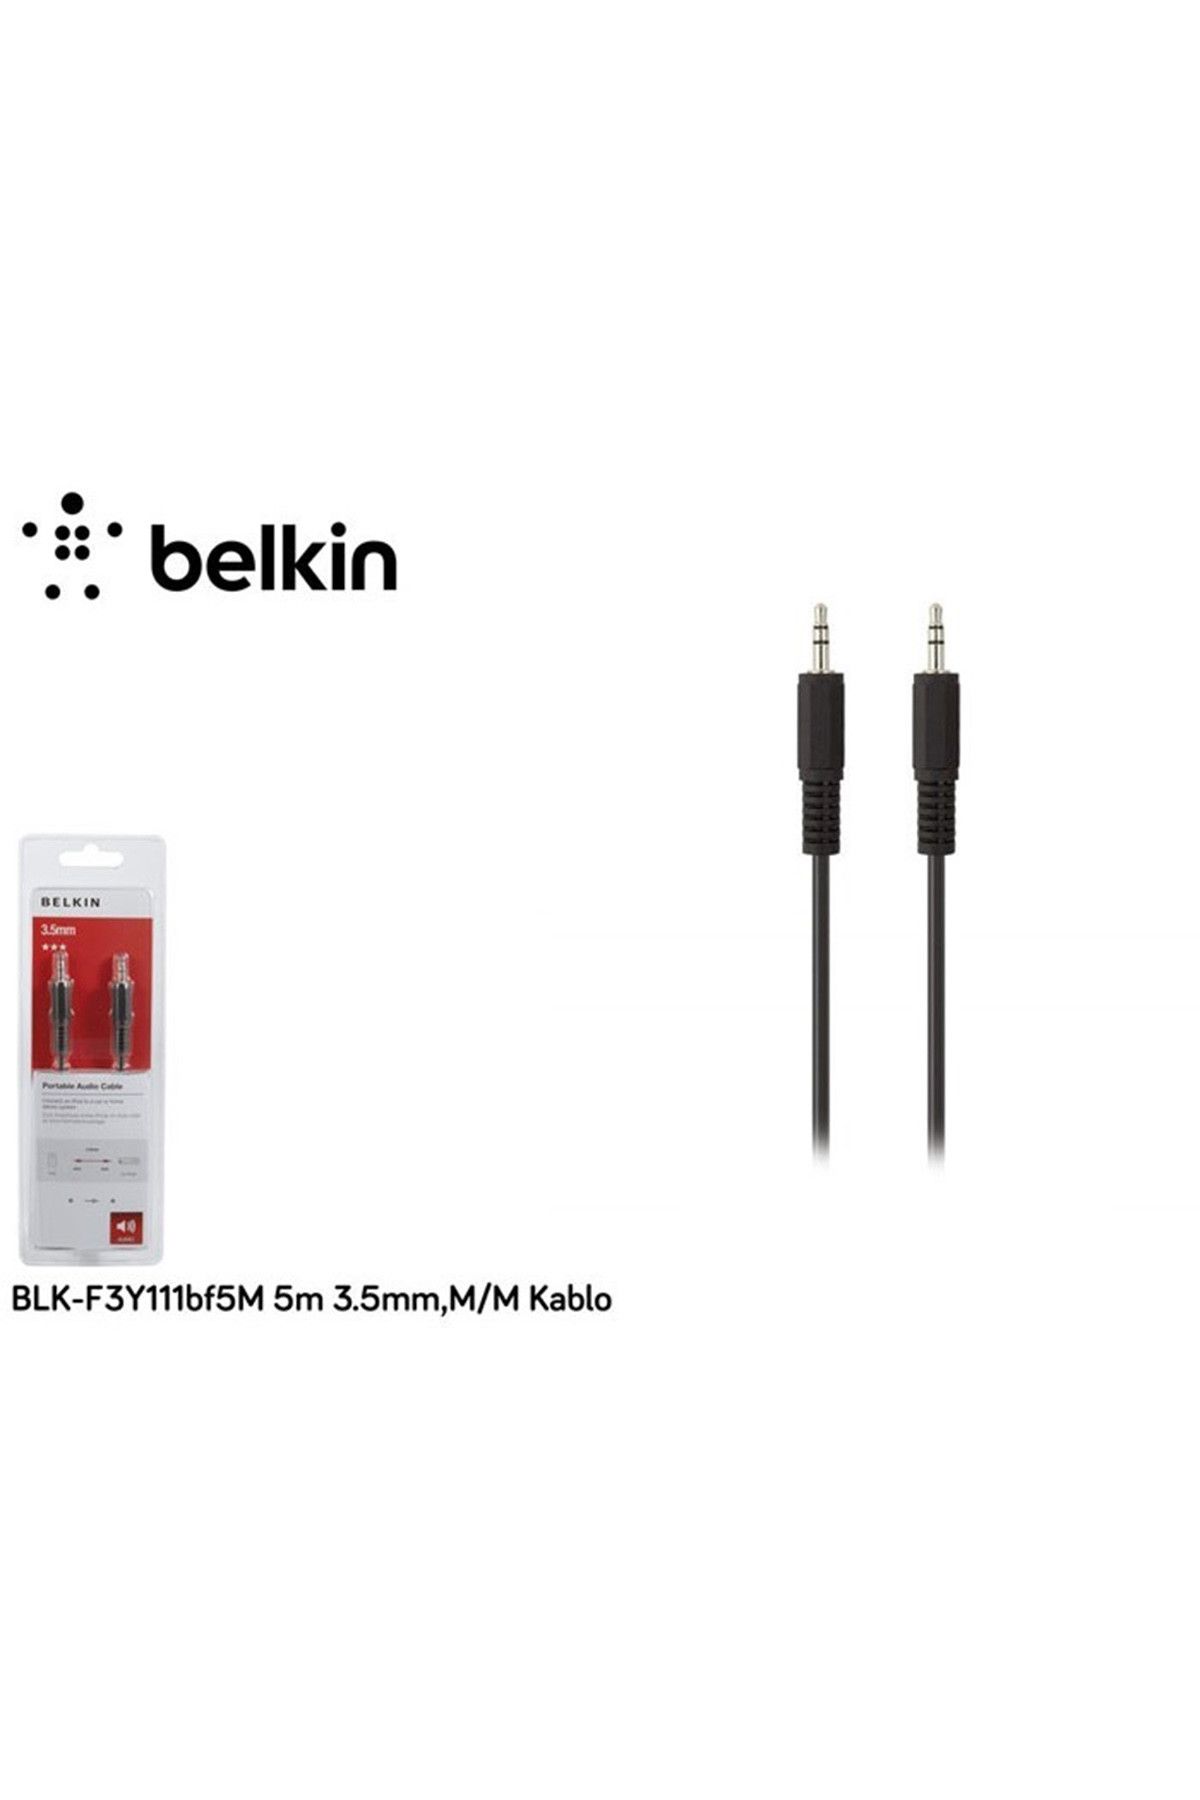 Belkin 5M 3.5Mm,M/M Kablo f3y111bf5m